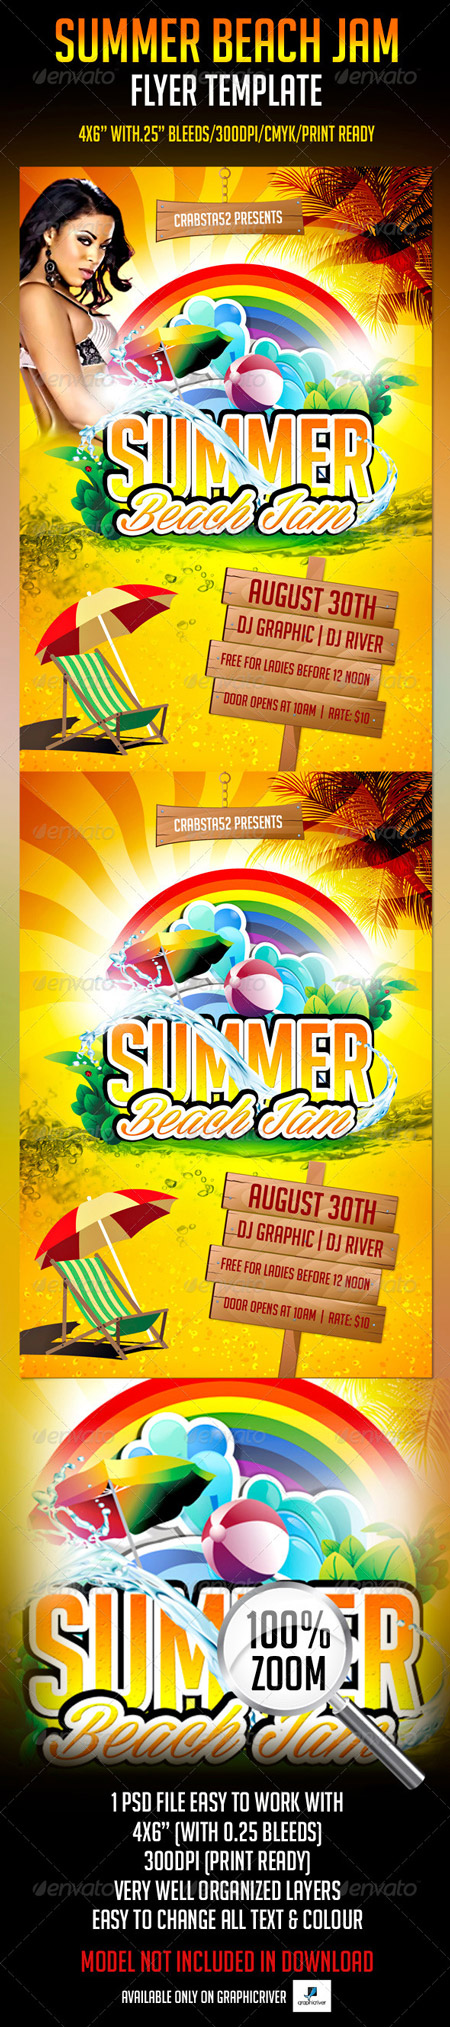 PSD - Summer Beach Jam Flyer Template